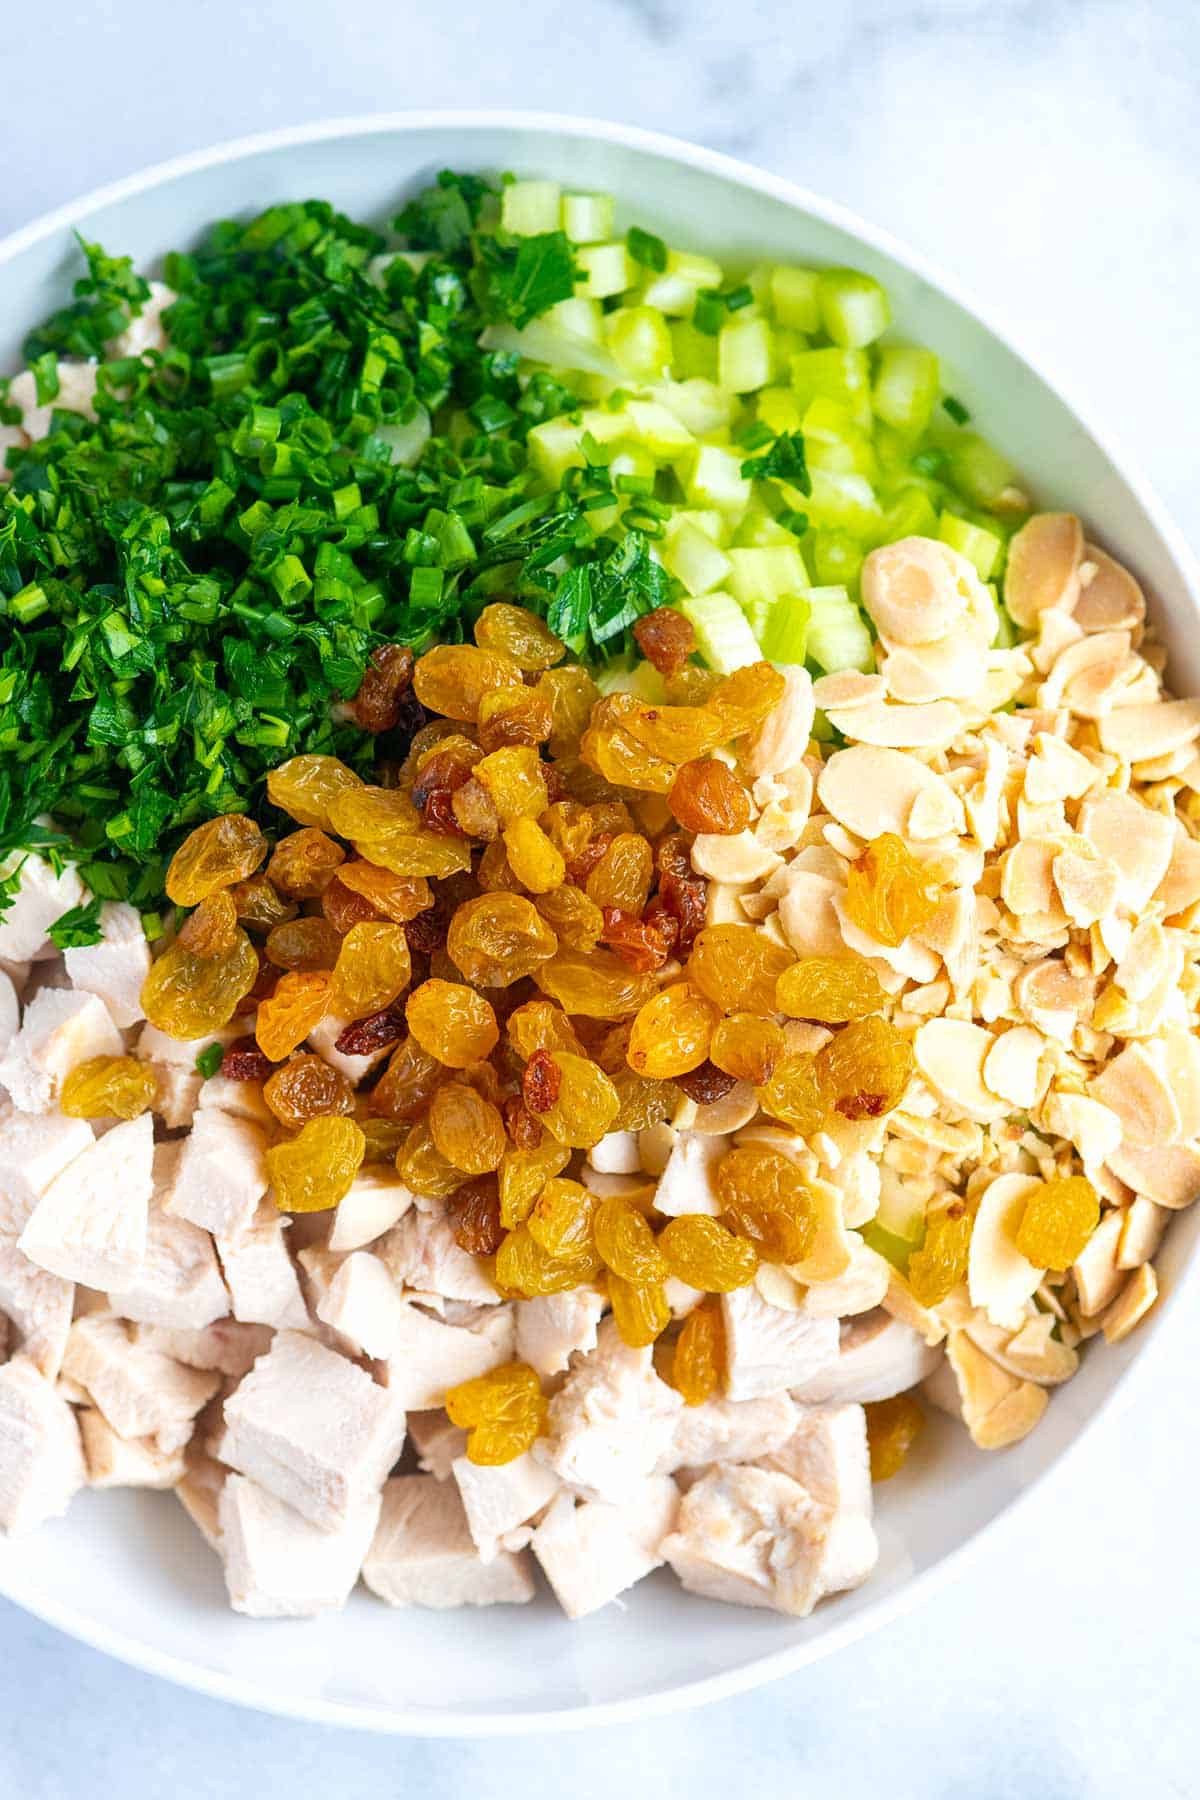 Chicken salad ingredients